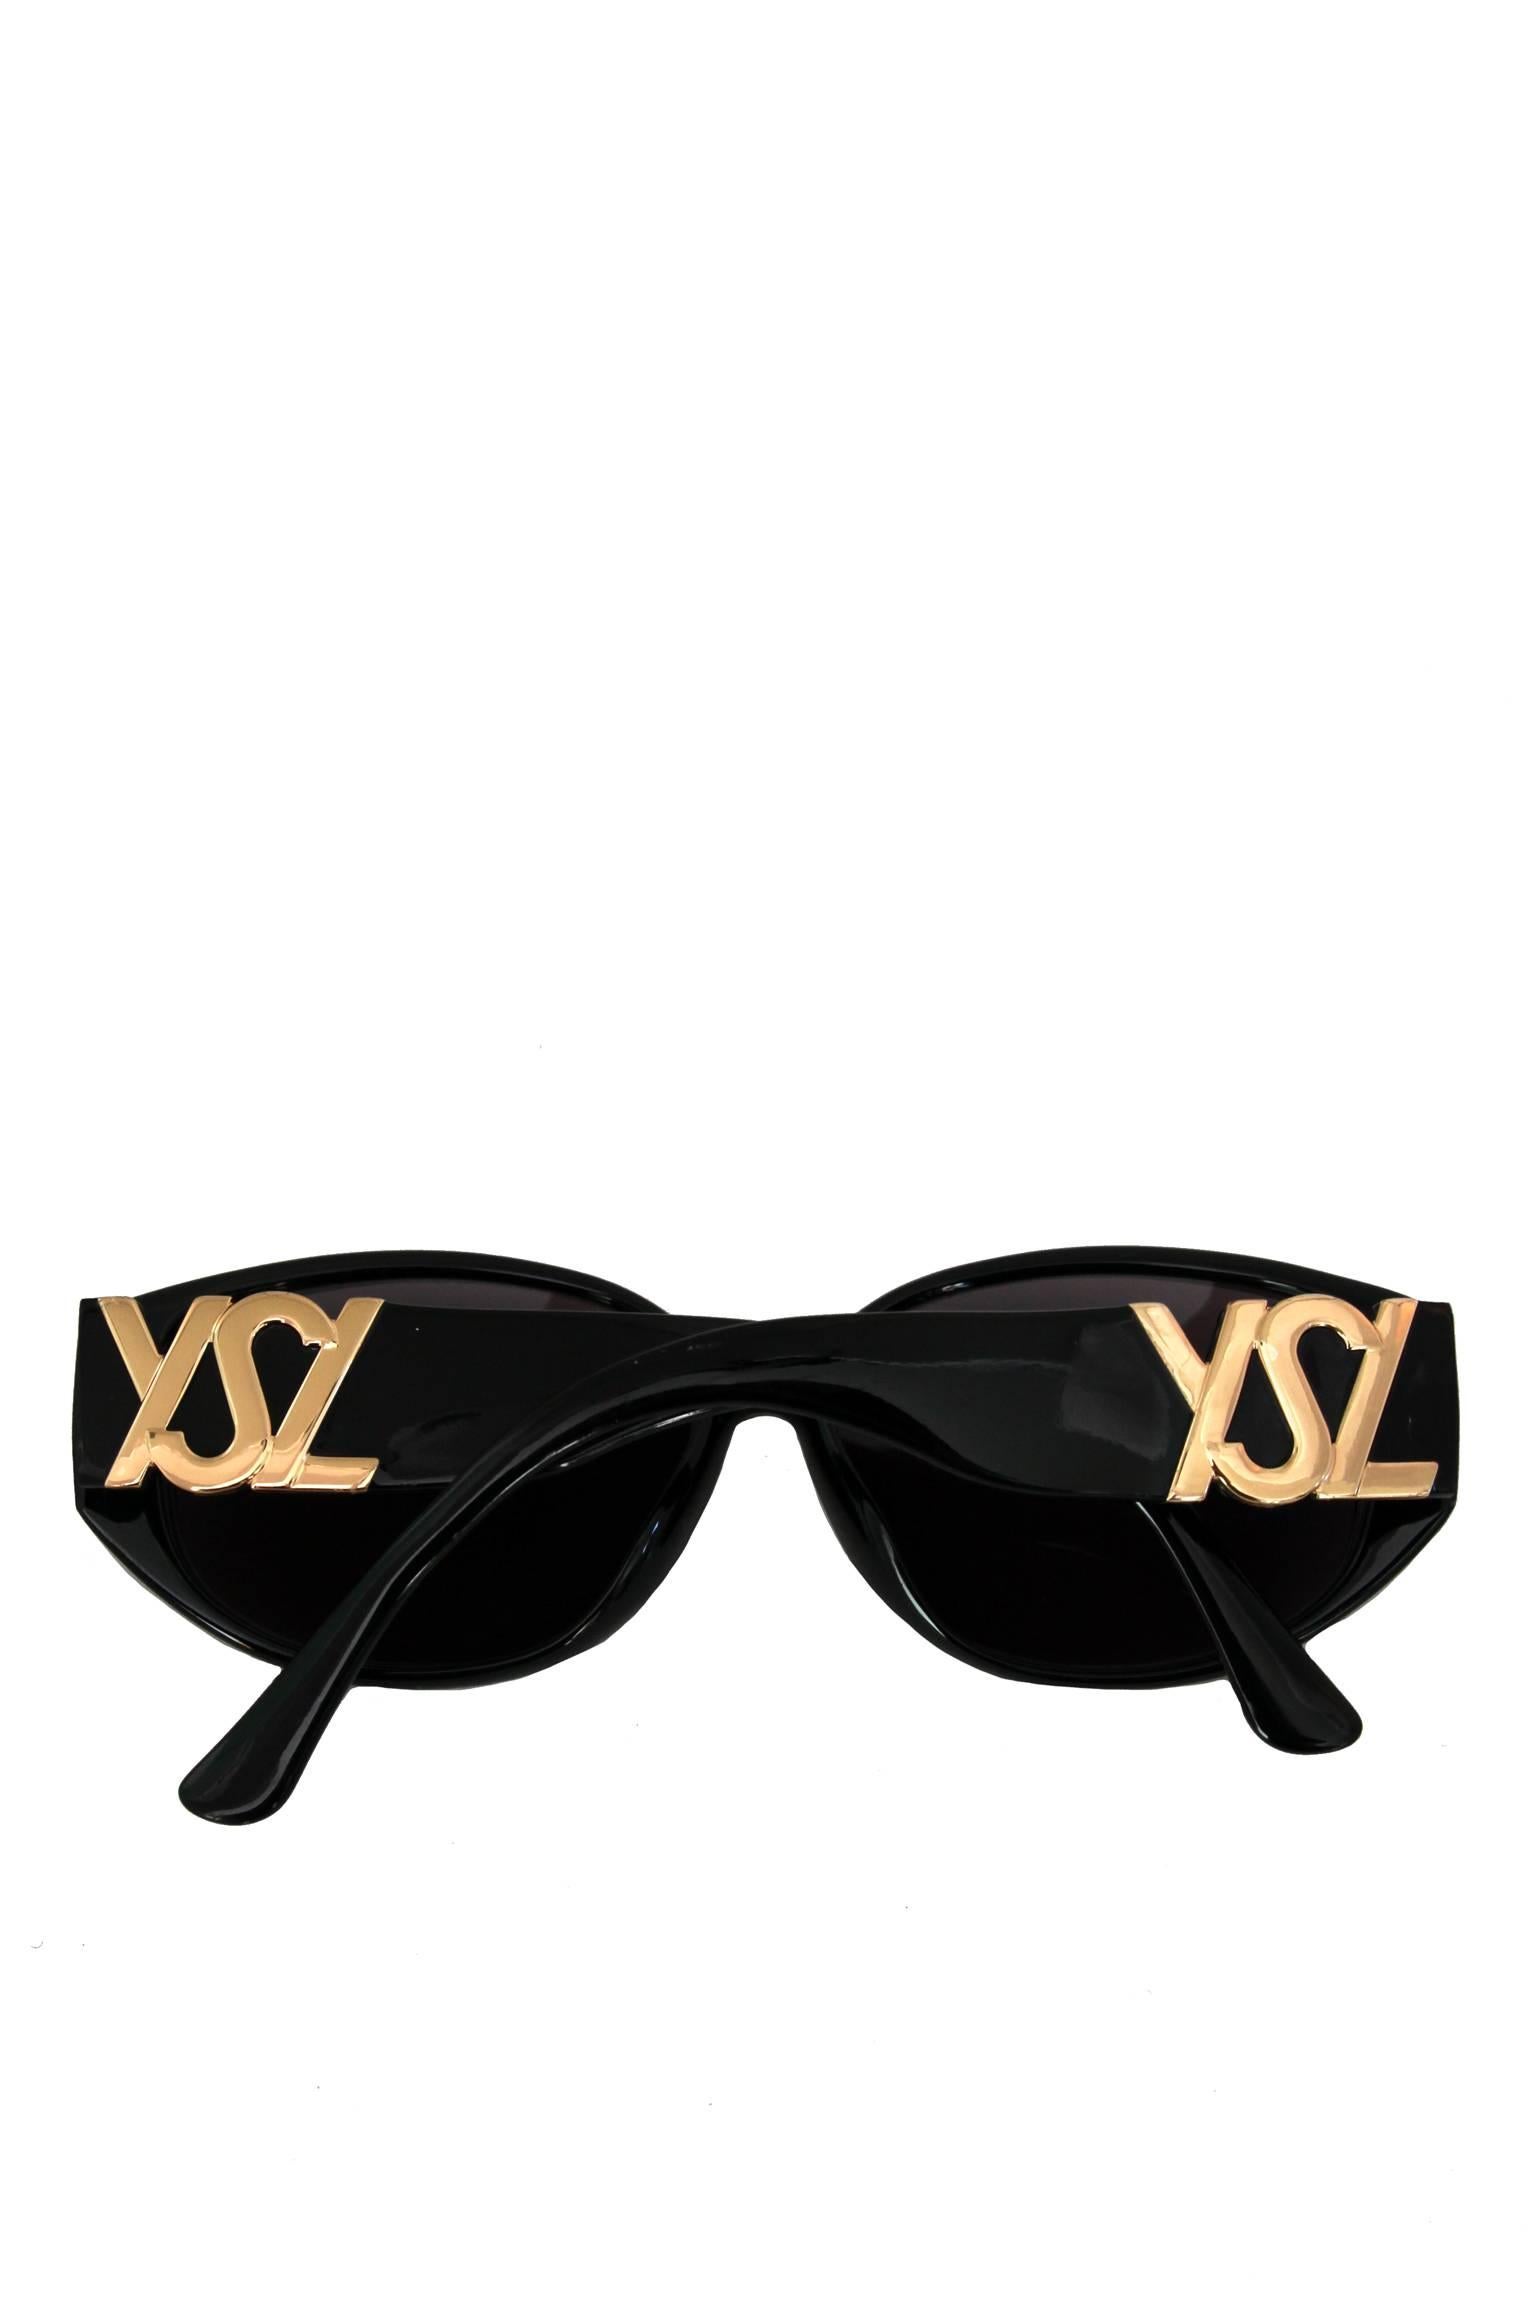 Women's 1990s Yves Saint Laurent Black Frame Sunglasses W. Gold 'YSL' Detail